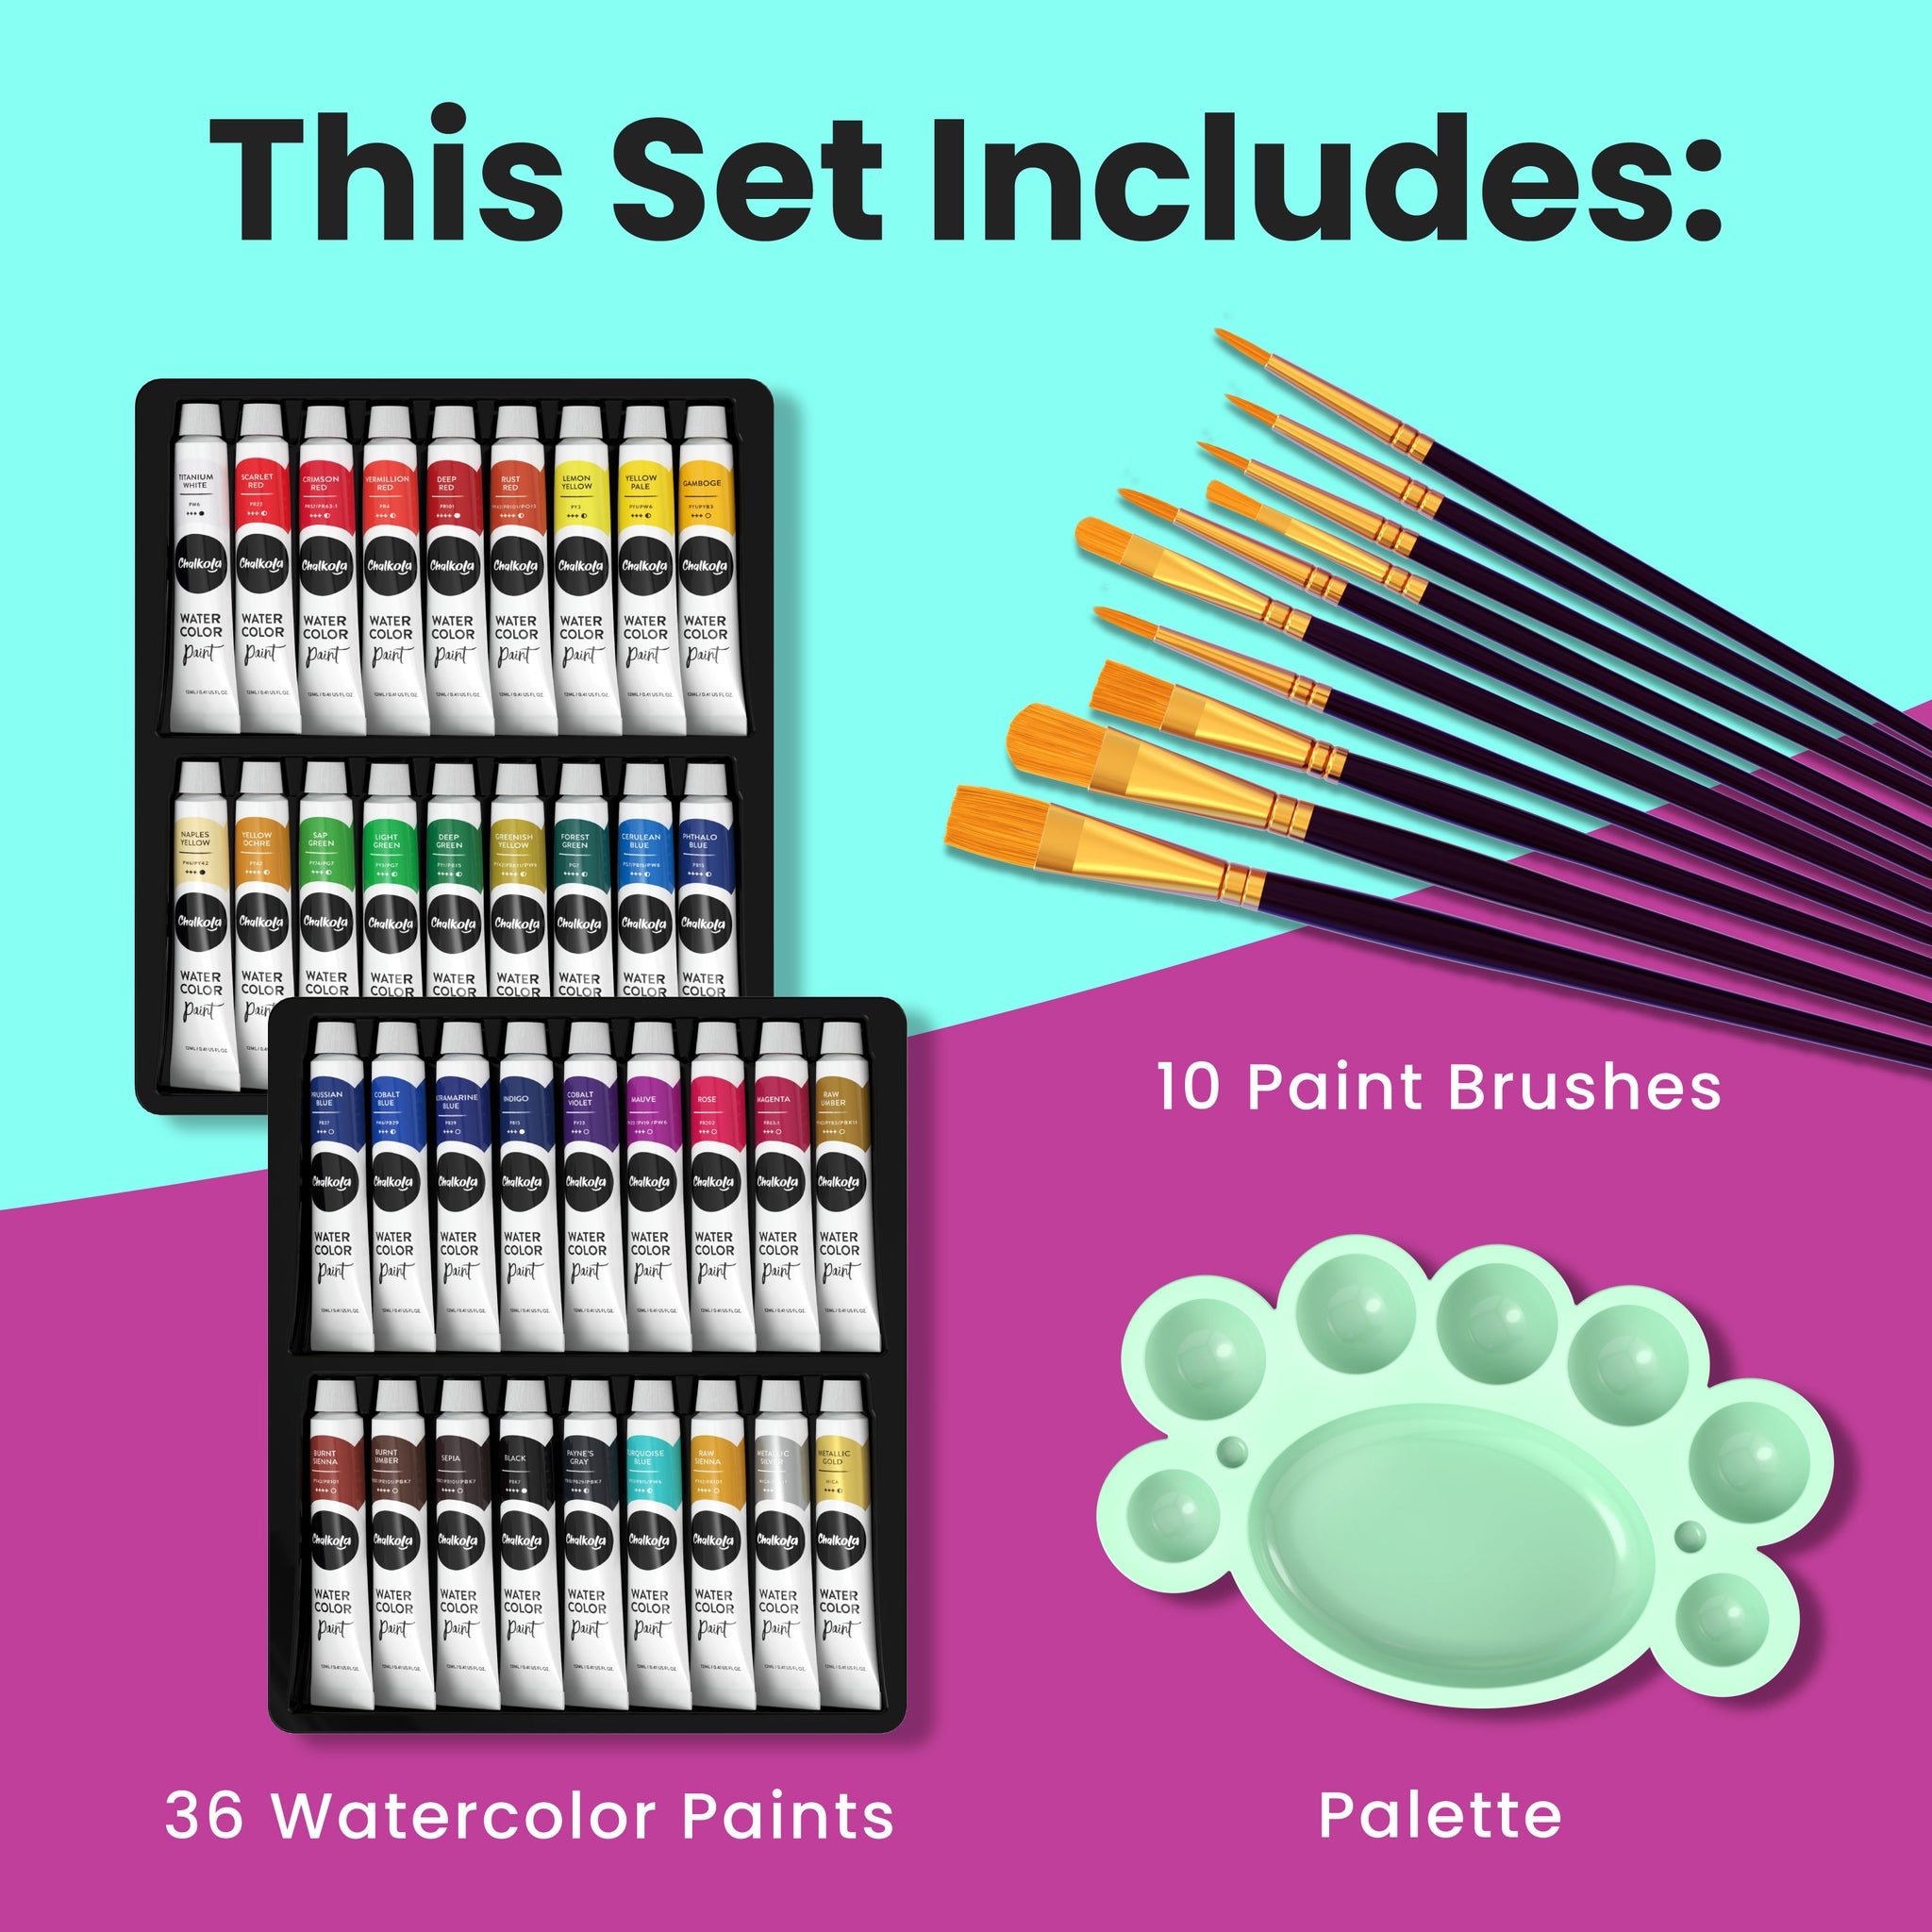 Artist Color Pallet Watercolor Paint Set of 12 Tubes .4 FL Oz Tubes